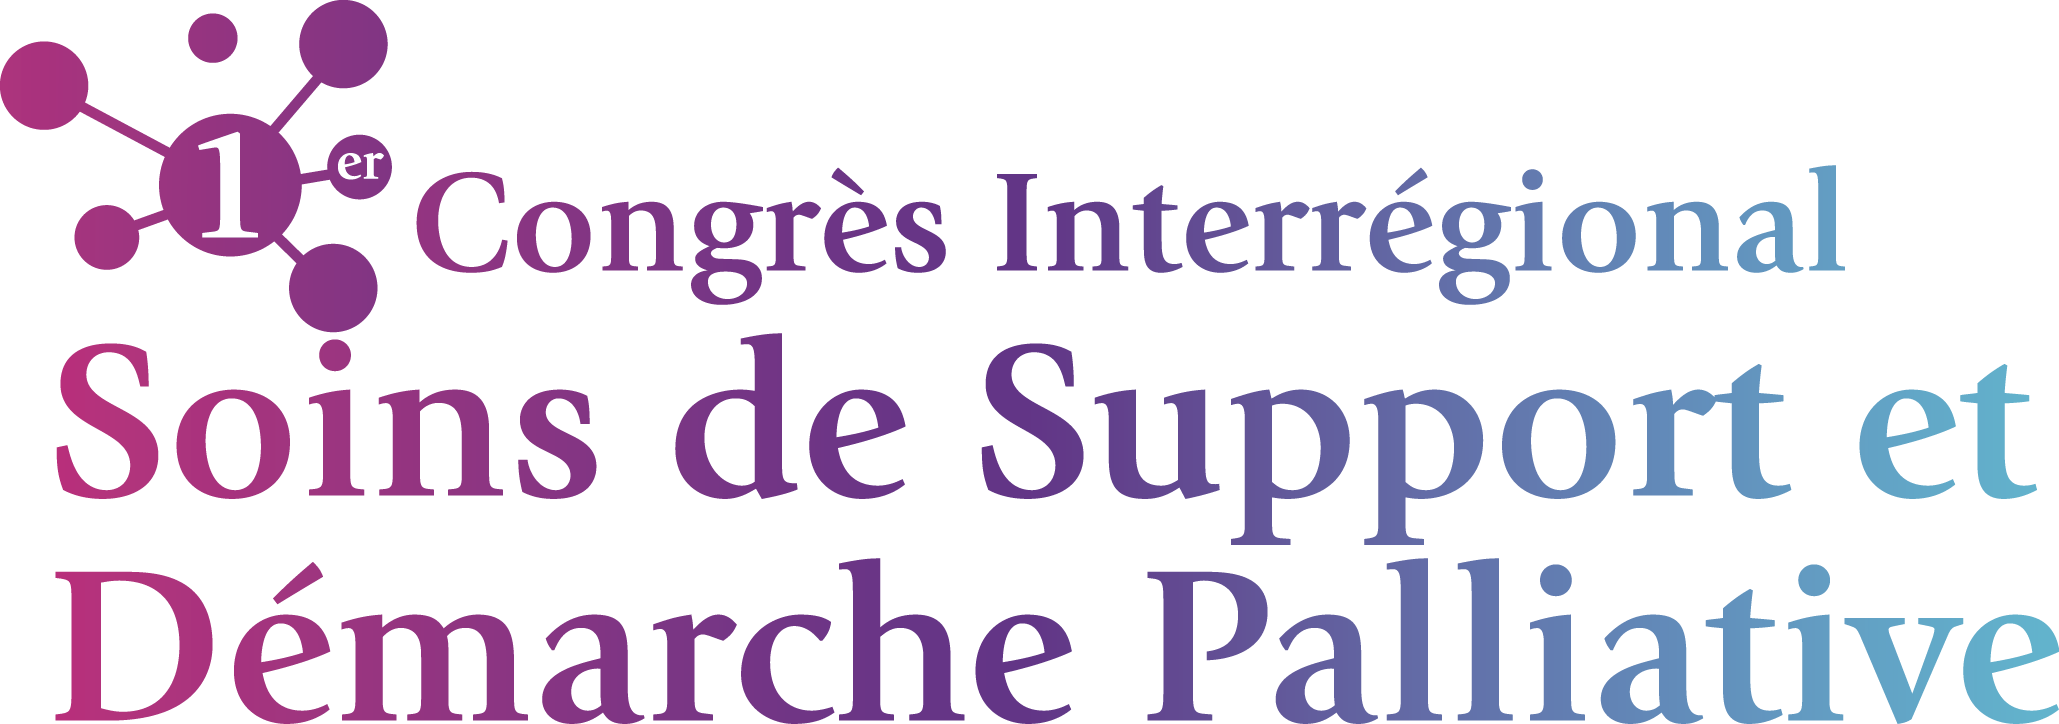 1er congrès Interrégional de Soins de Support et Démarche Palliative